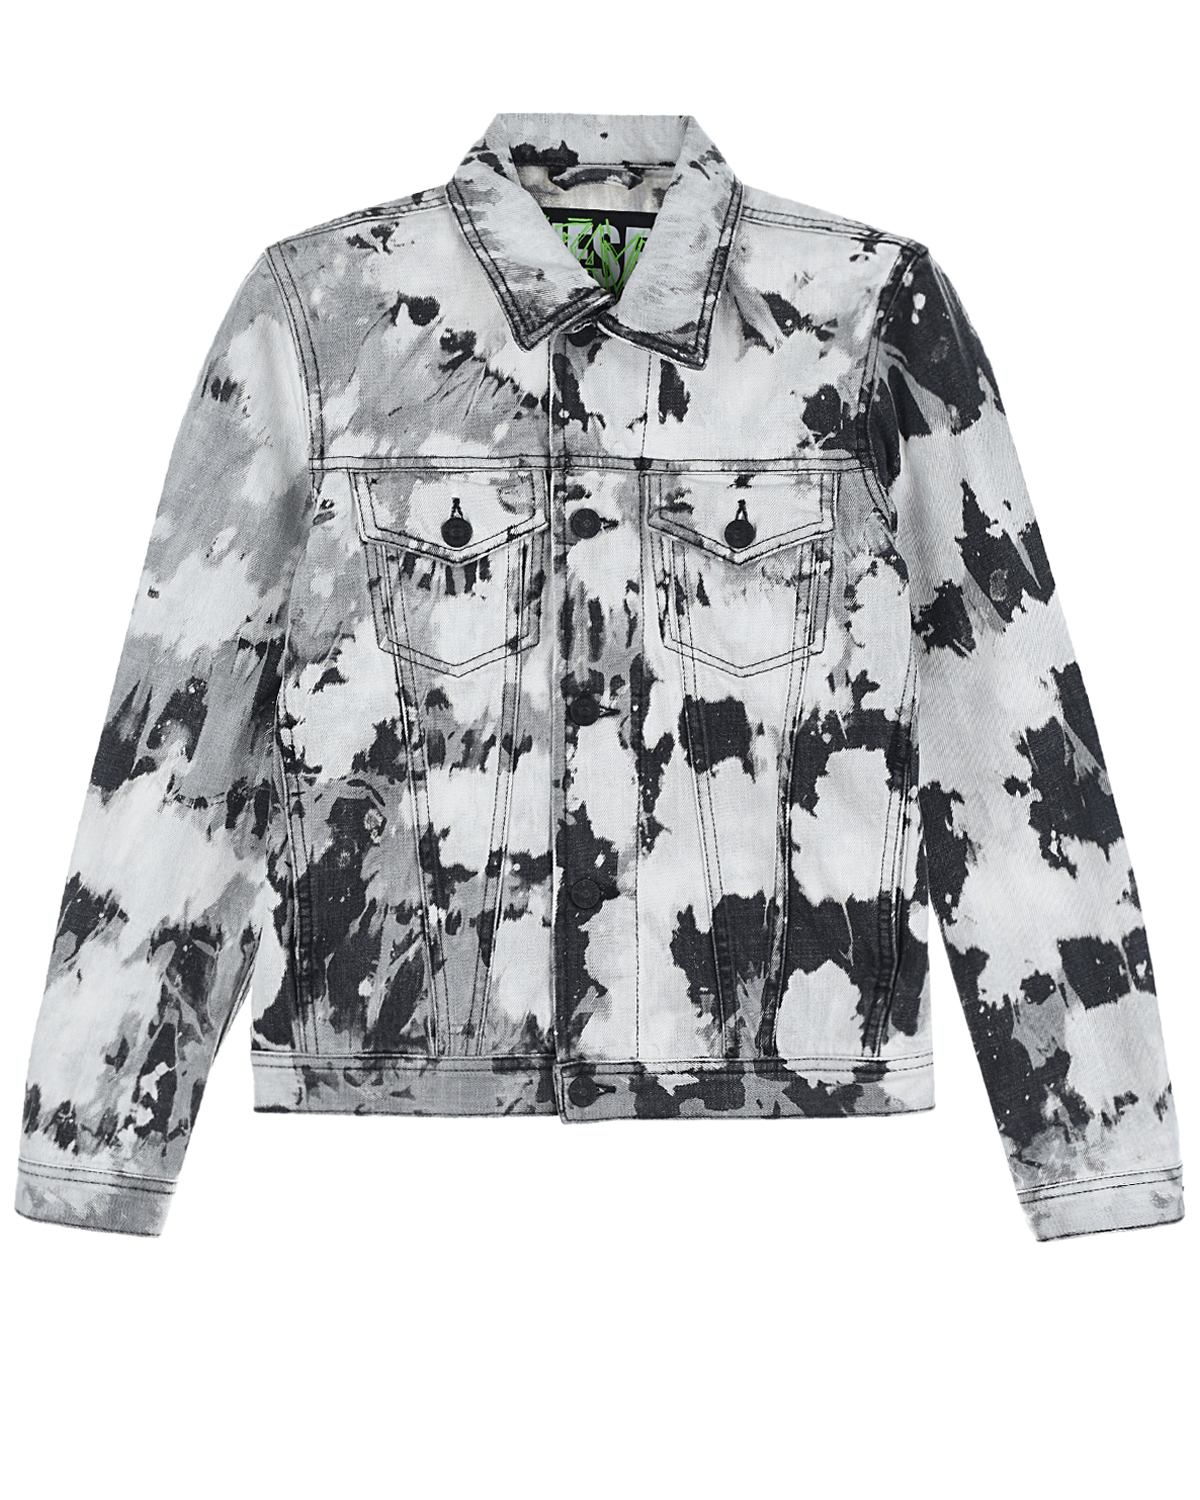 Джинсовая куртка с принтом "тай-дай" Diesel детская, размер 140, цвет серый